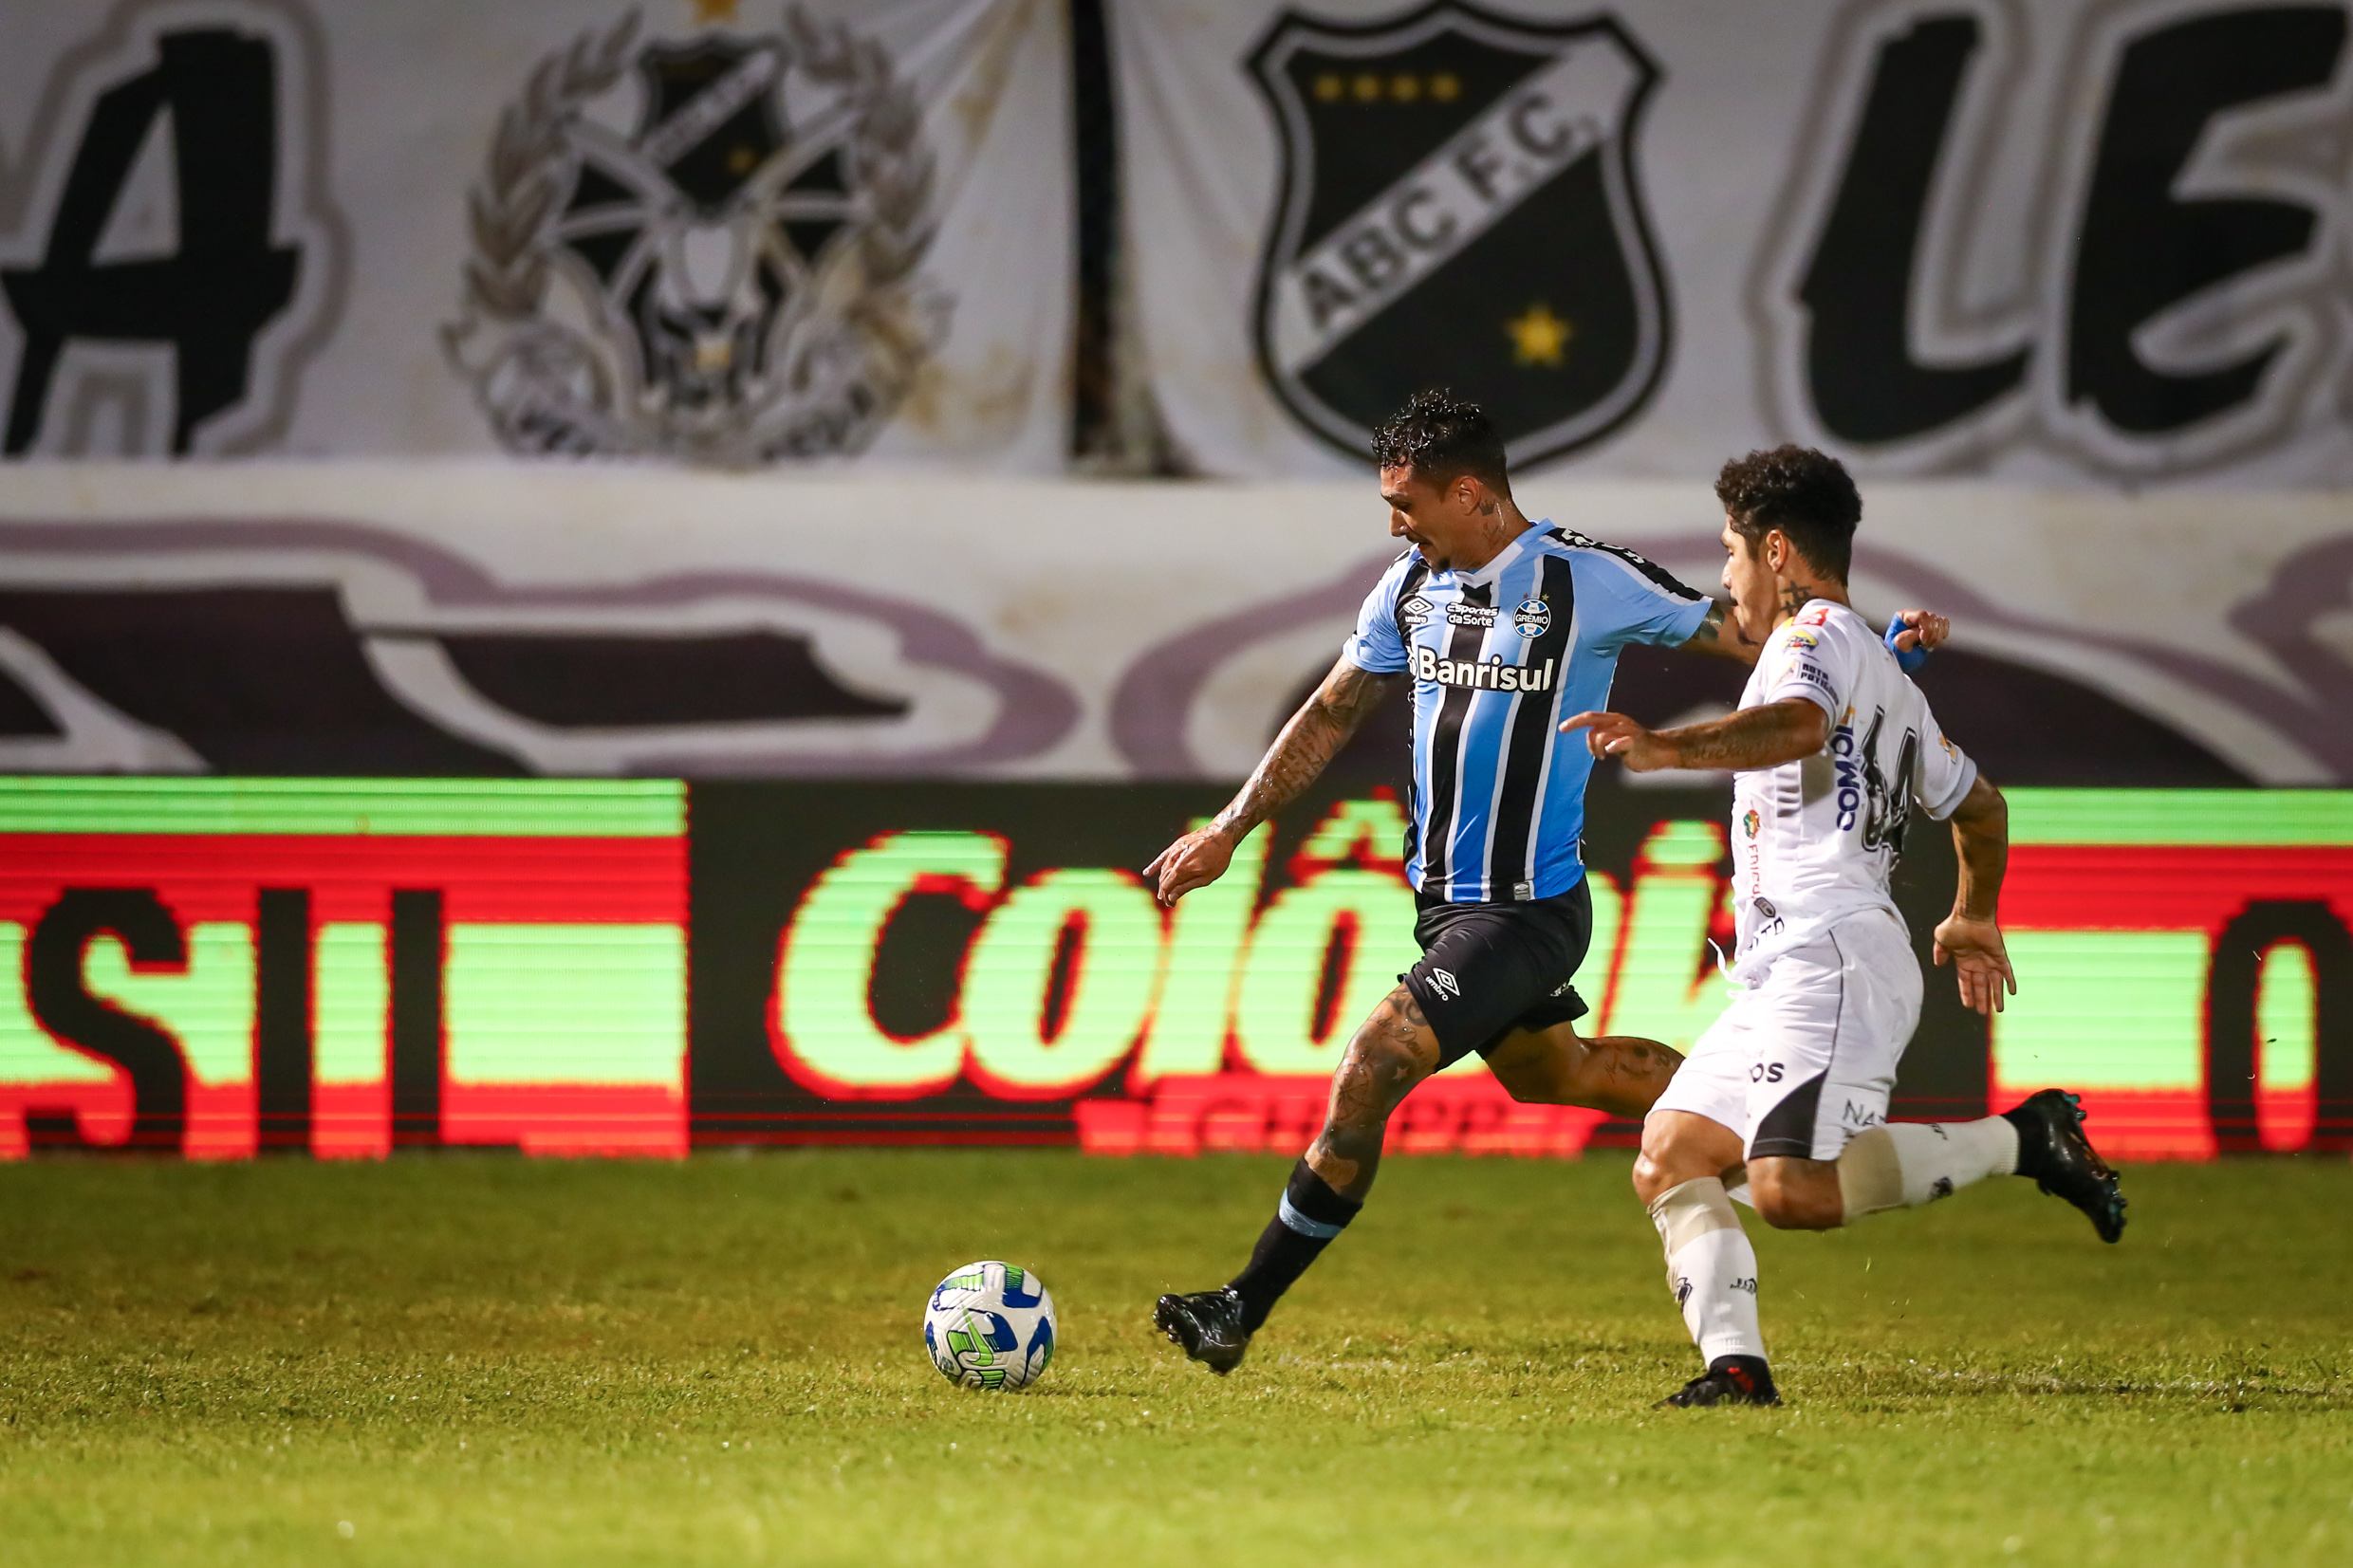 Grêmio vs ABC: A Clash of Titans in Brazilian Football